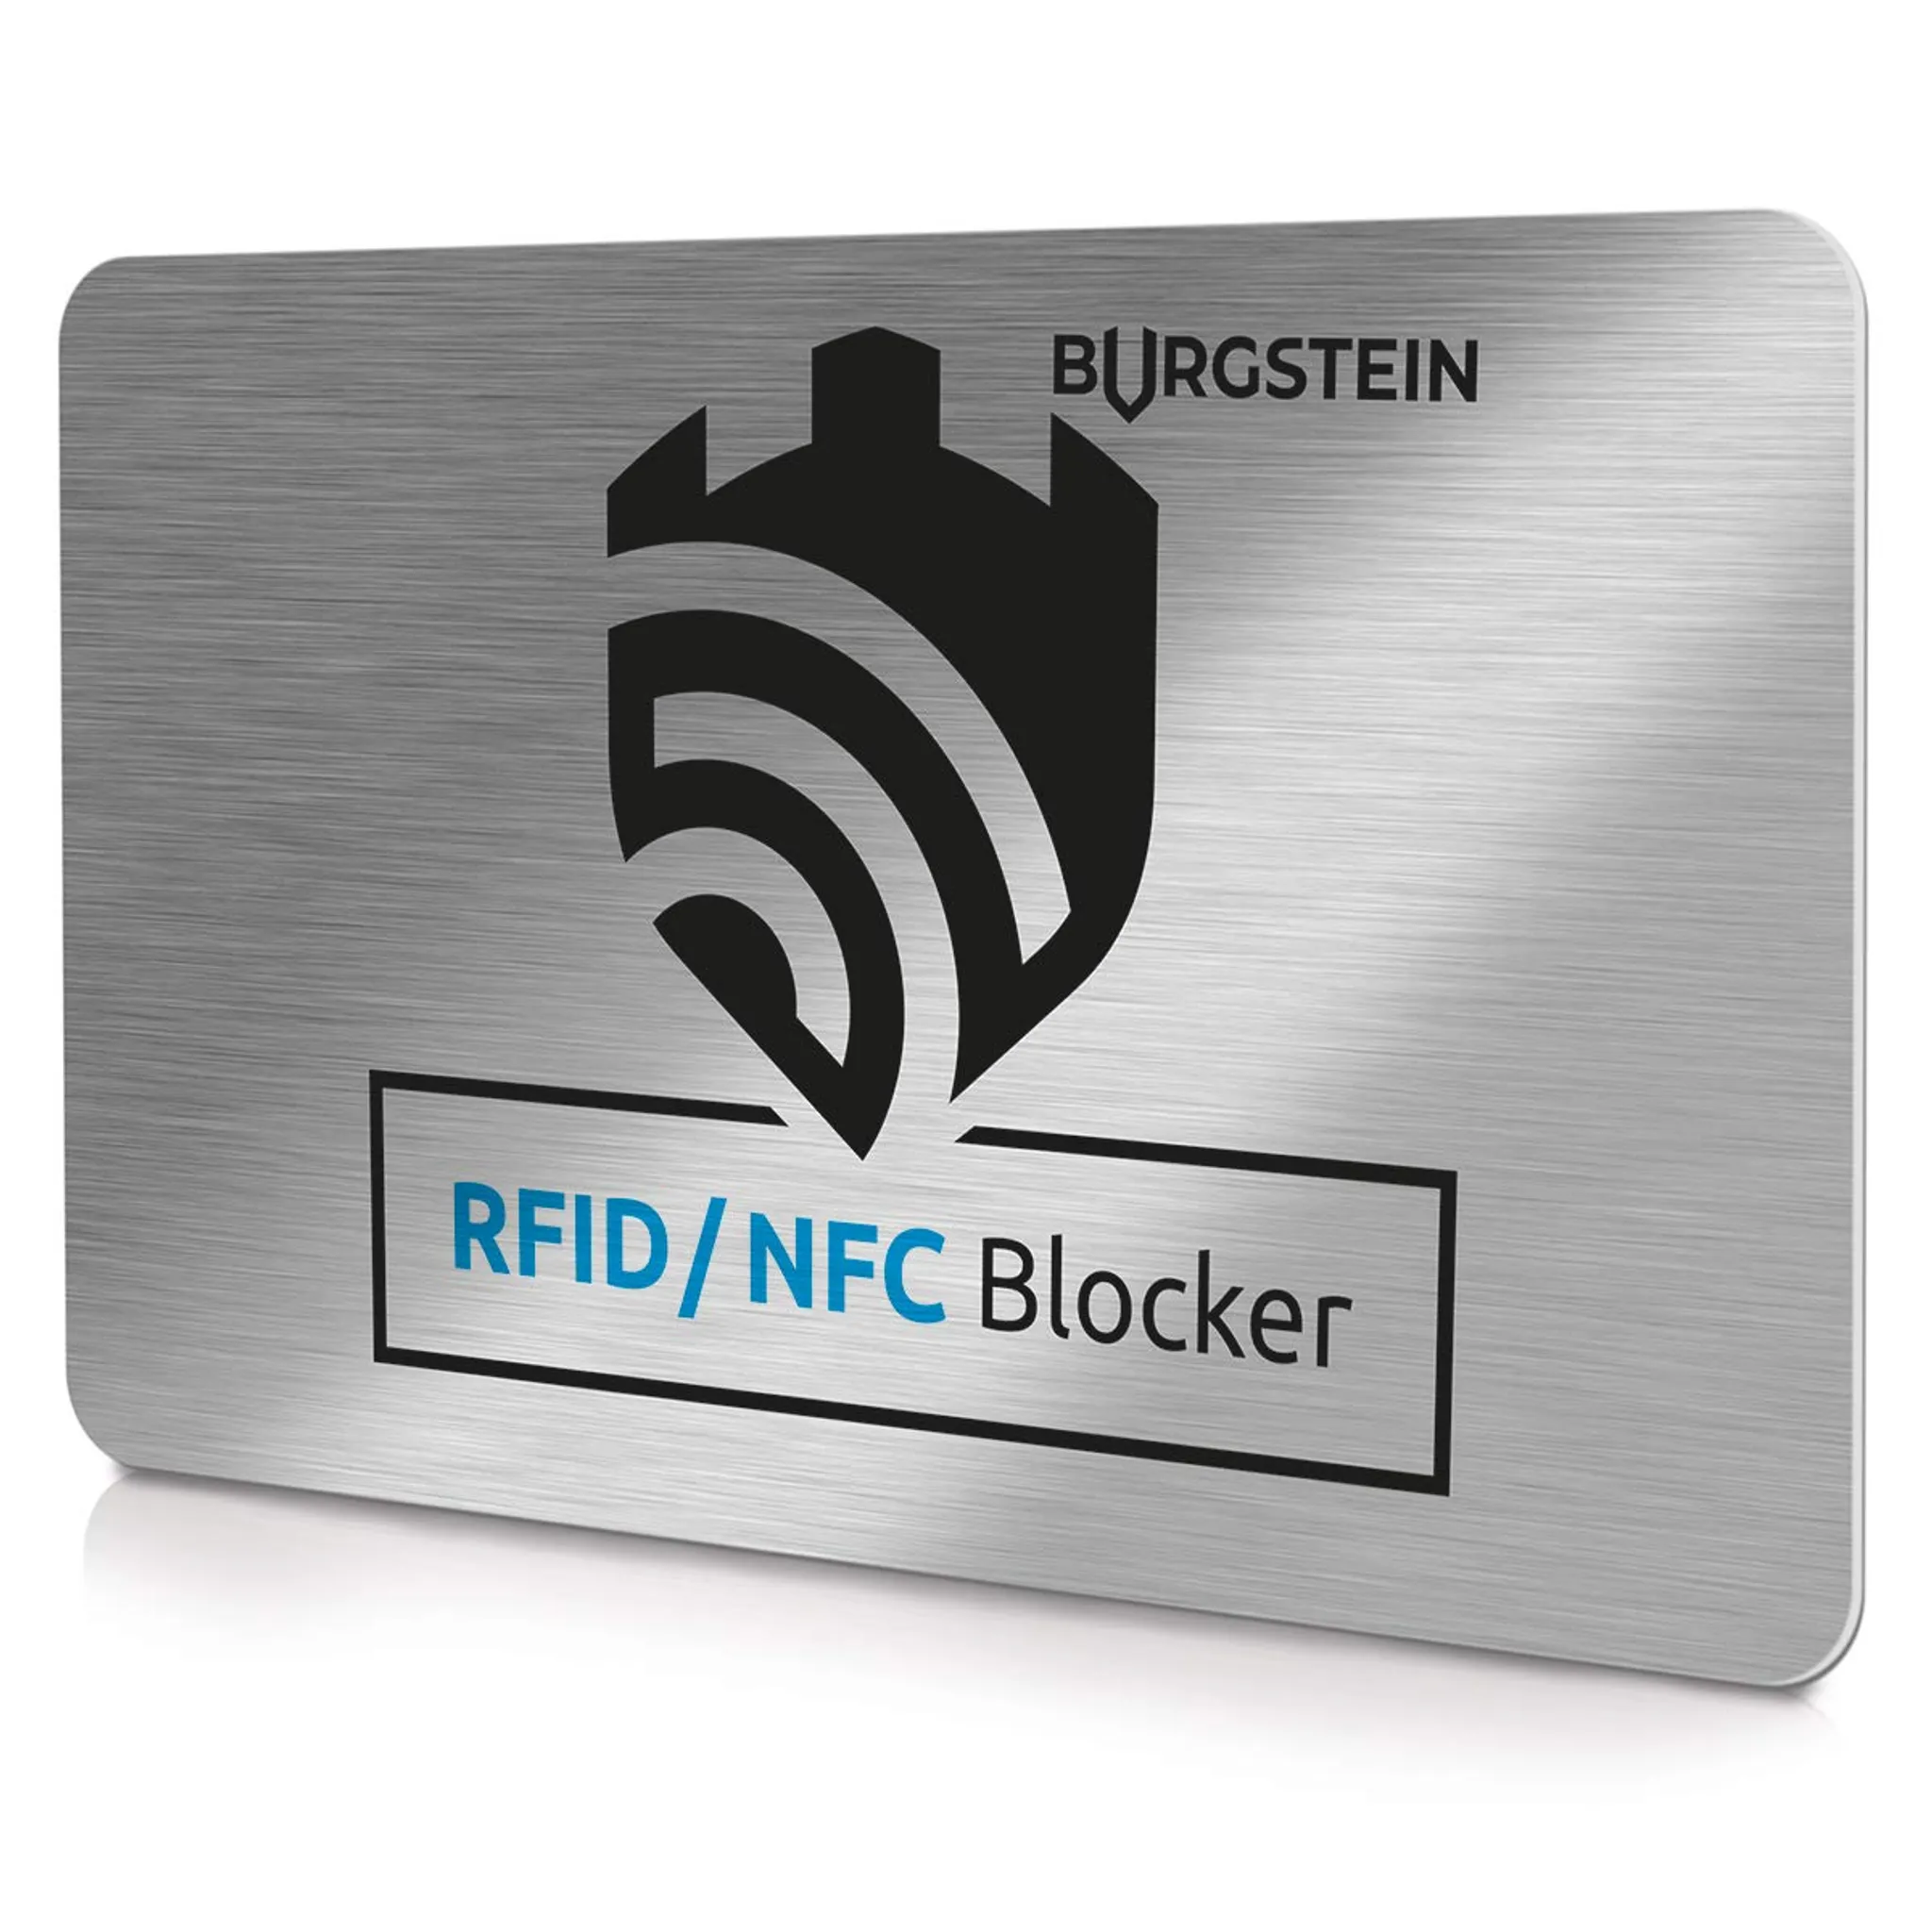 12 Kreditkartenhülle, Rfid Blocker Kartenhülle, Rfid-blockierende  Schutzhülle Für Nfc, Rfid Nfc Blocker Schutzabdeckung Gegen Daten Diebstahl  